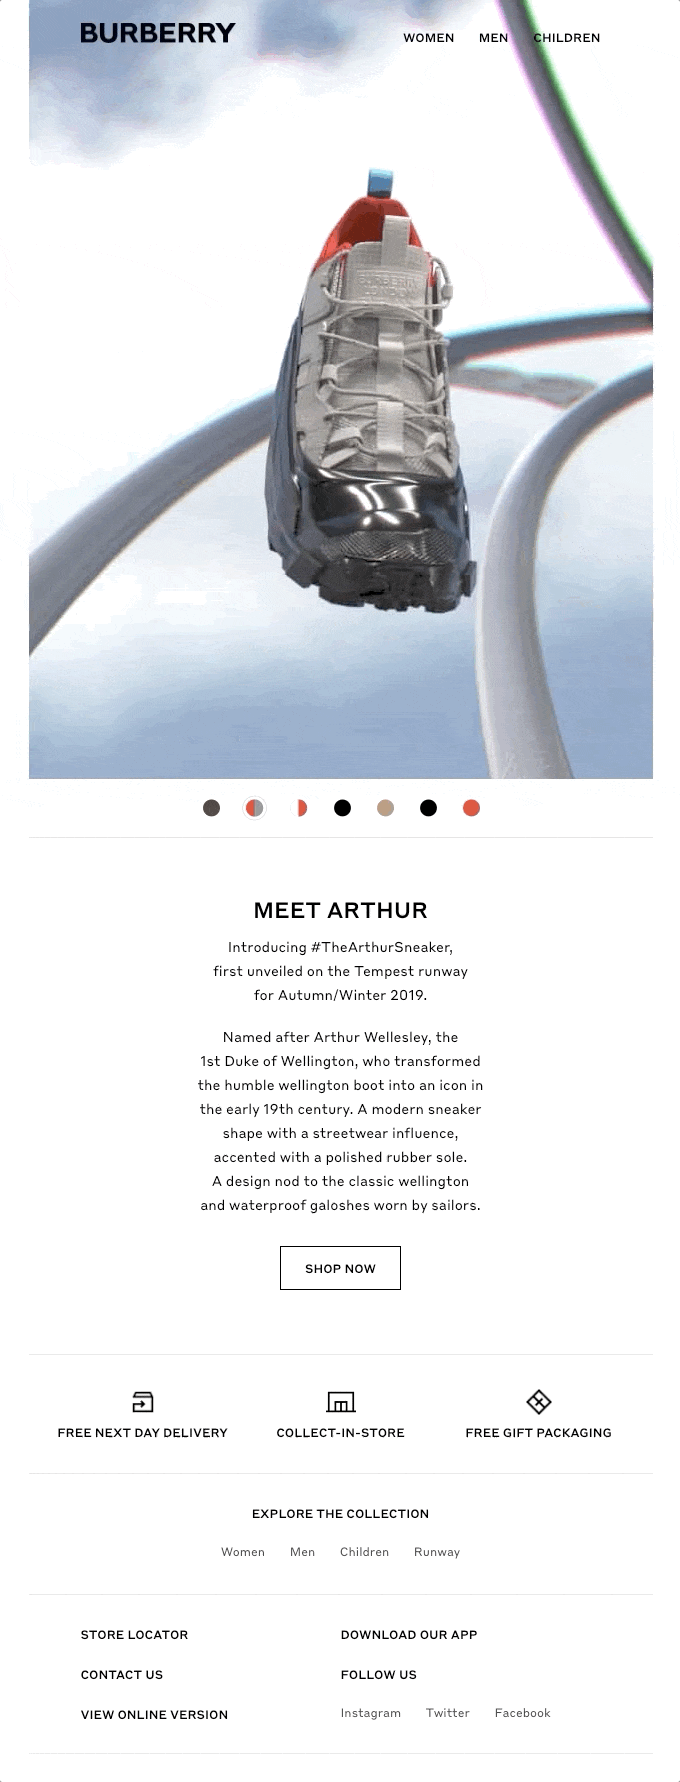 meet-arthur